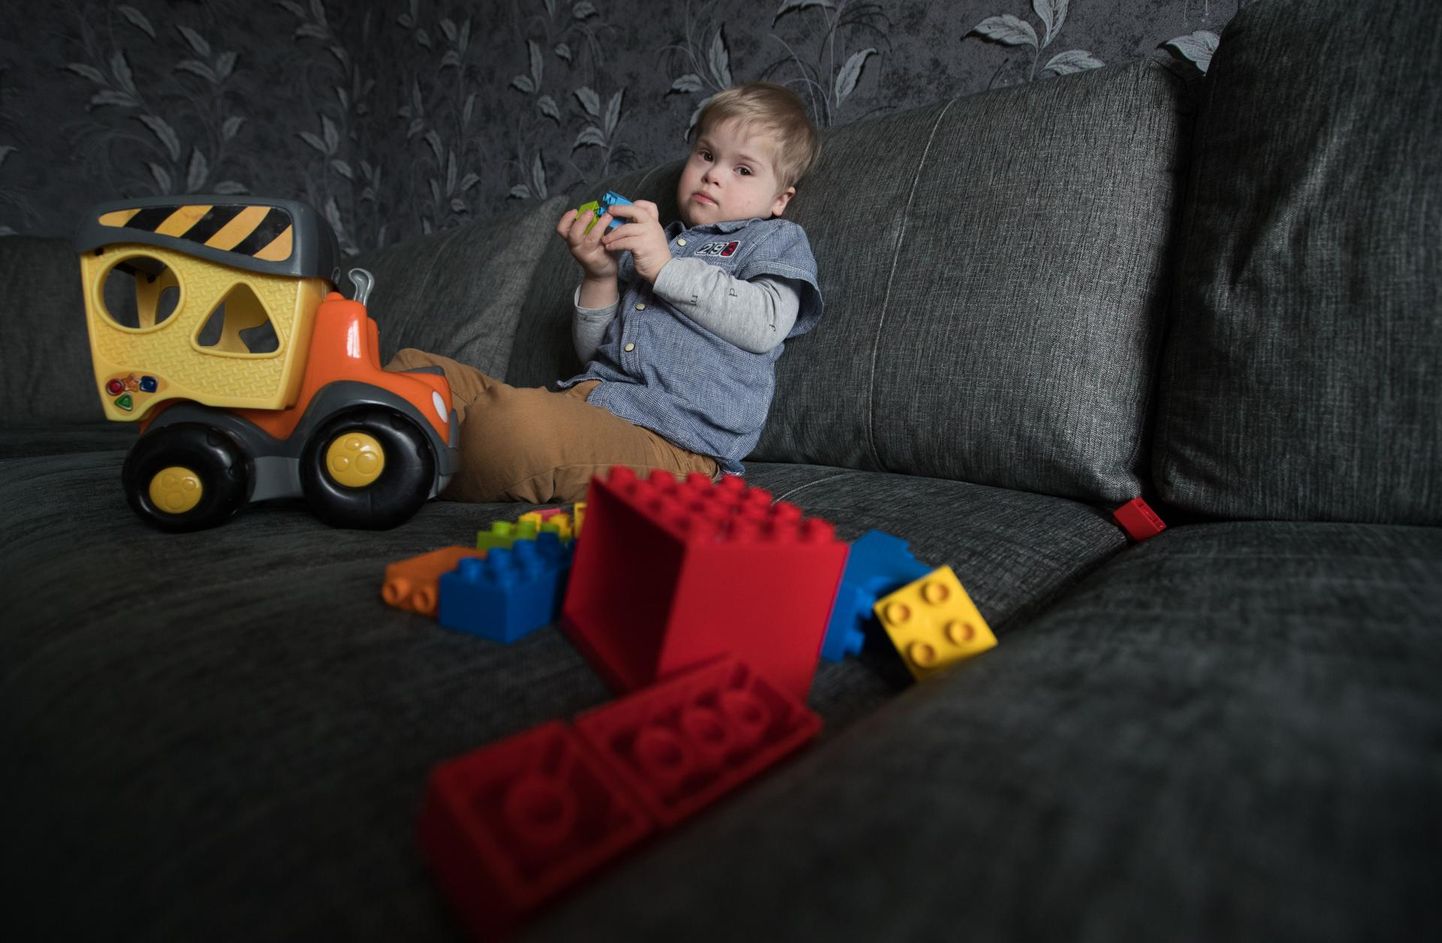 Kolme ja poole aastane Henri võib mitu tundi süvenenult legodega mängida. Kui Downi laps on harjunud midagi omamoodi tegema, siis teda naljalt ümber ei õpeta.